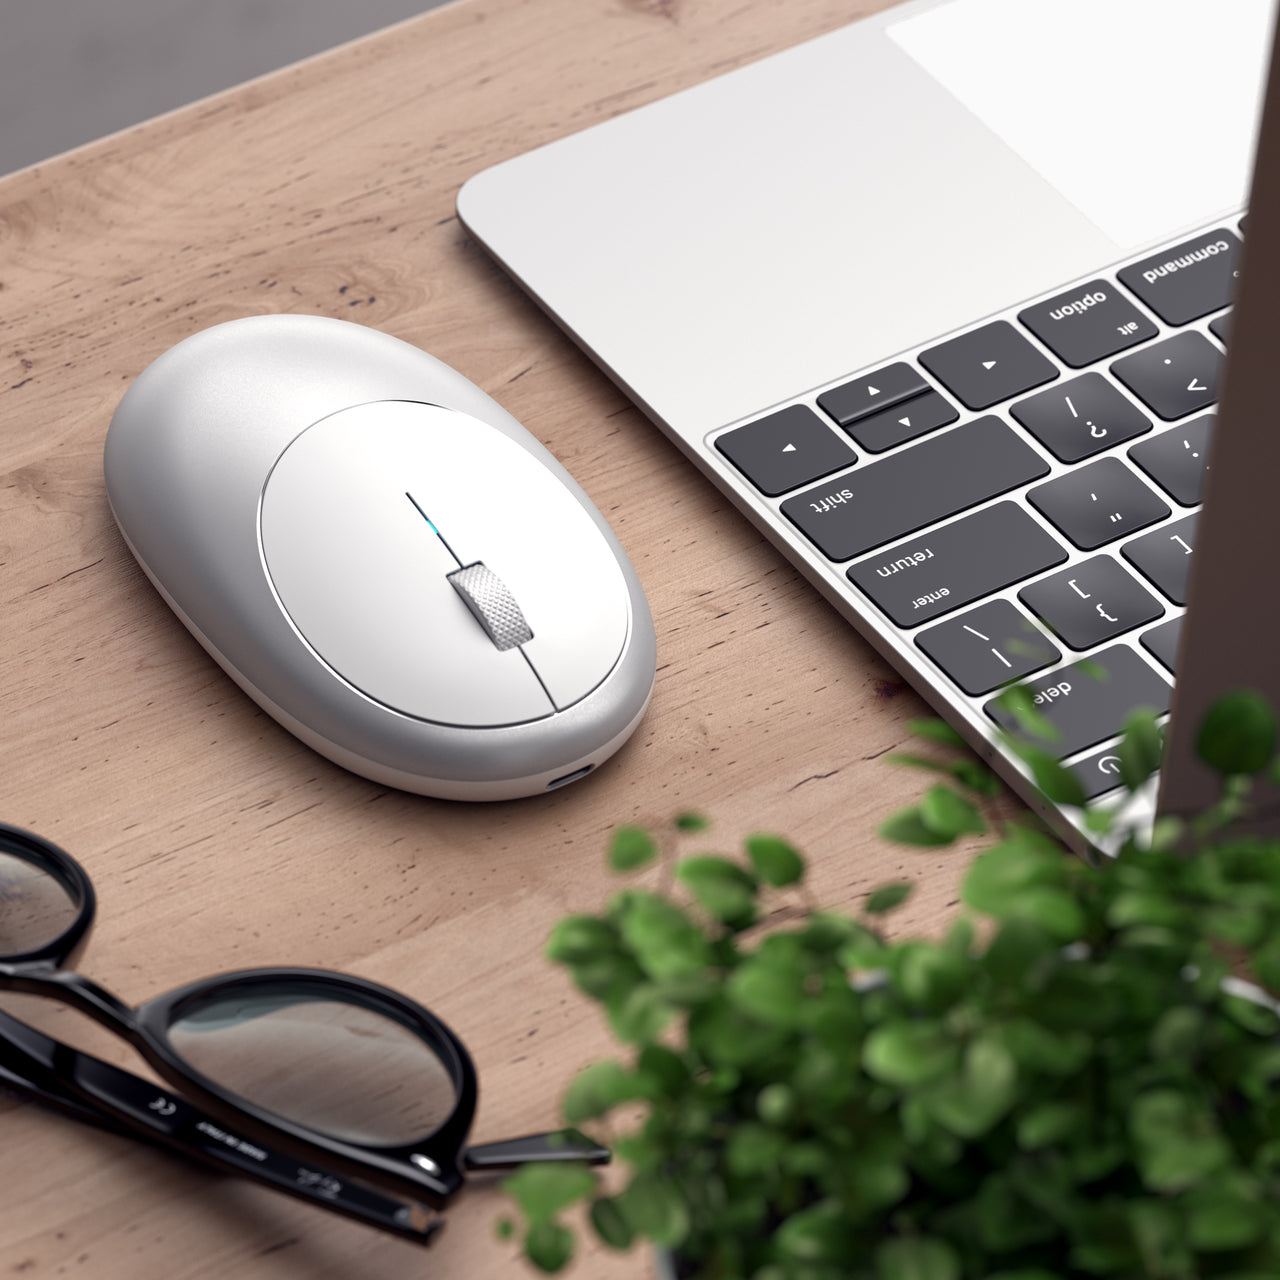 M1 Wireless Mouse Mac - Satechi